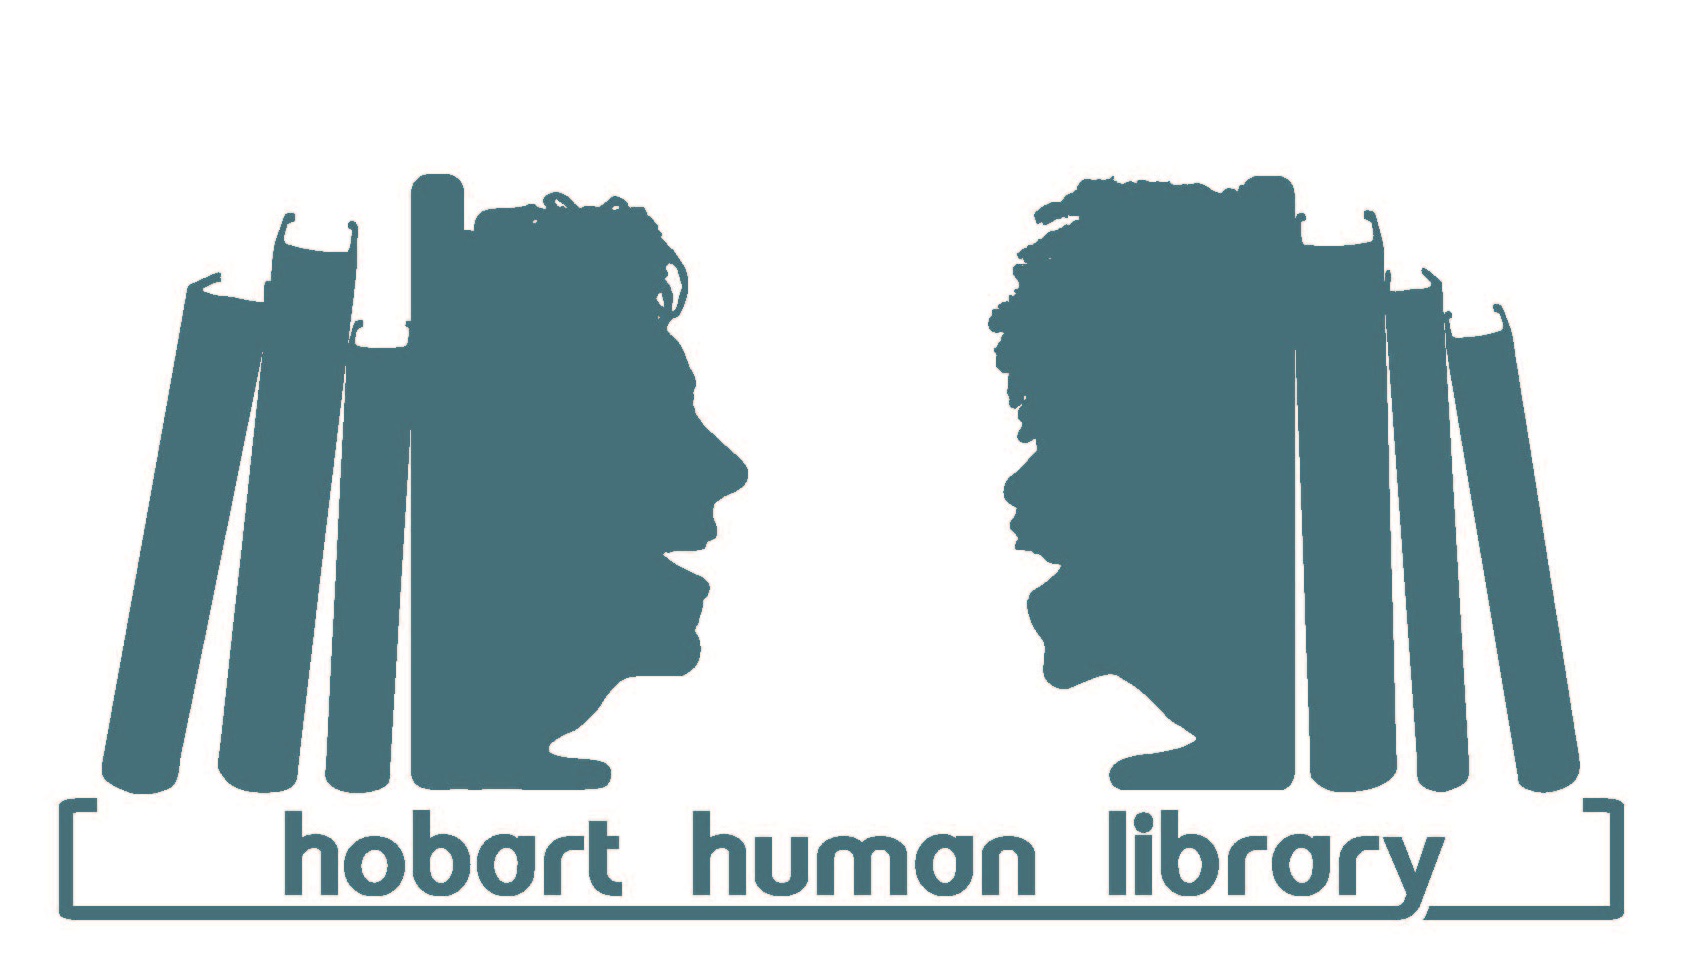 Hobart Human Library logo